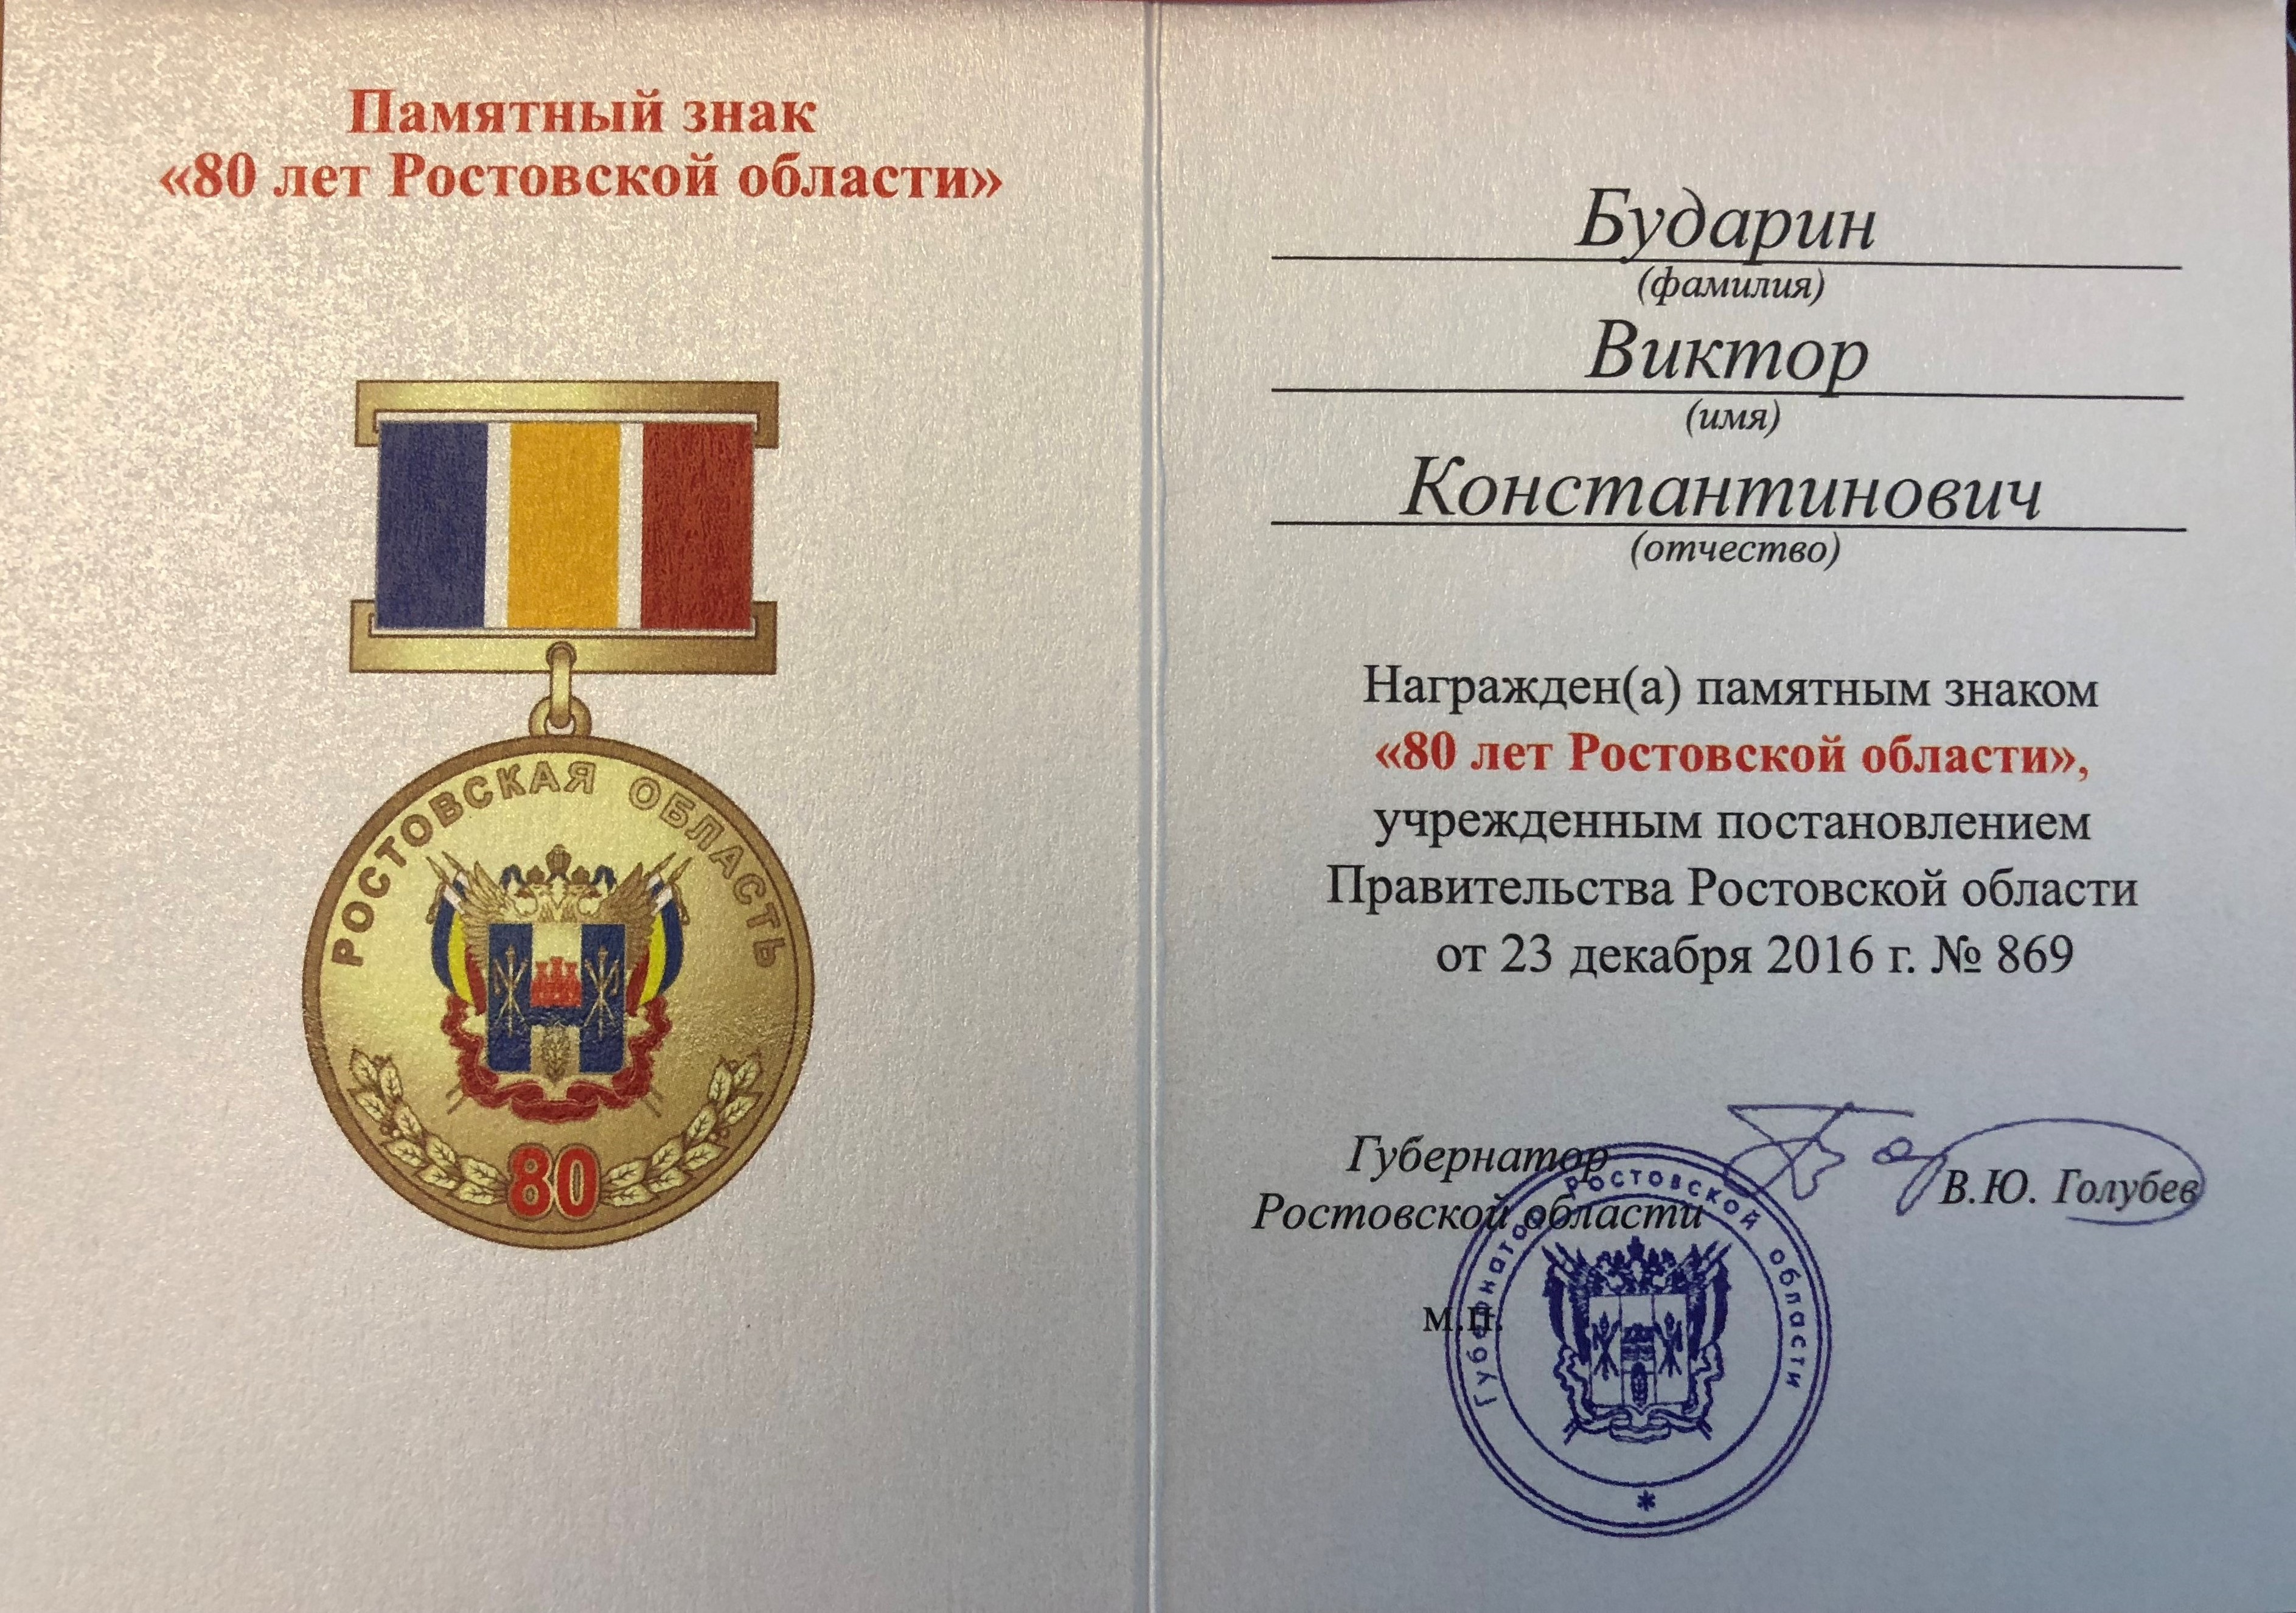 Виктор Бударин награжден памятным знаком «80 лет Ростовской области»